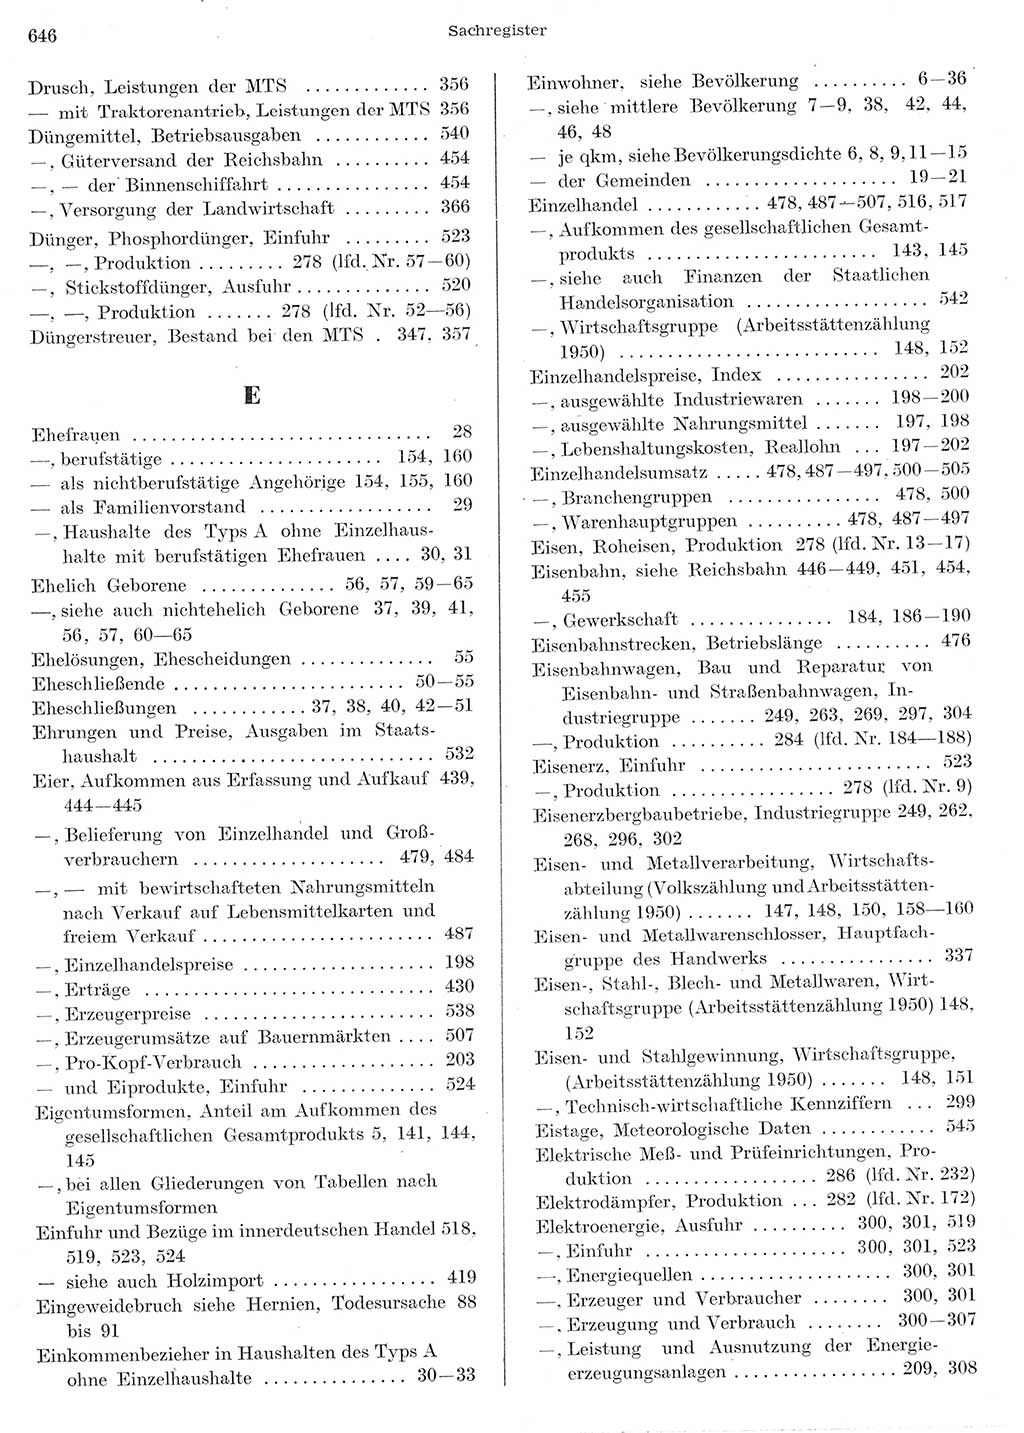 Statistisches Jahrbuch der Deutschen Demokratischen Republik (DDR) 1956, Seite 646 (Stat. Jb. DDR 1956, S. 646)